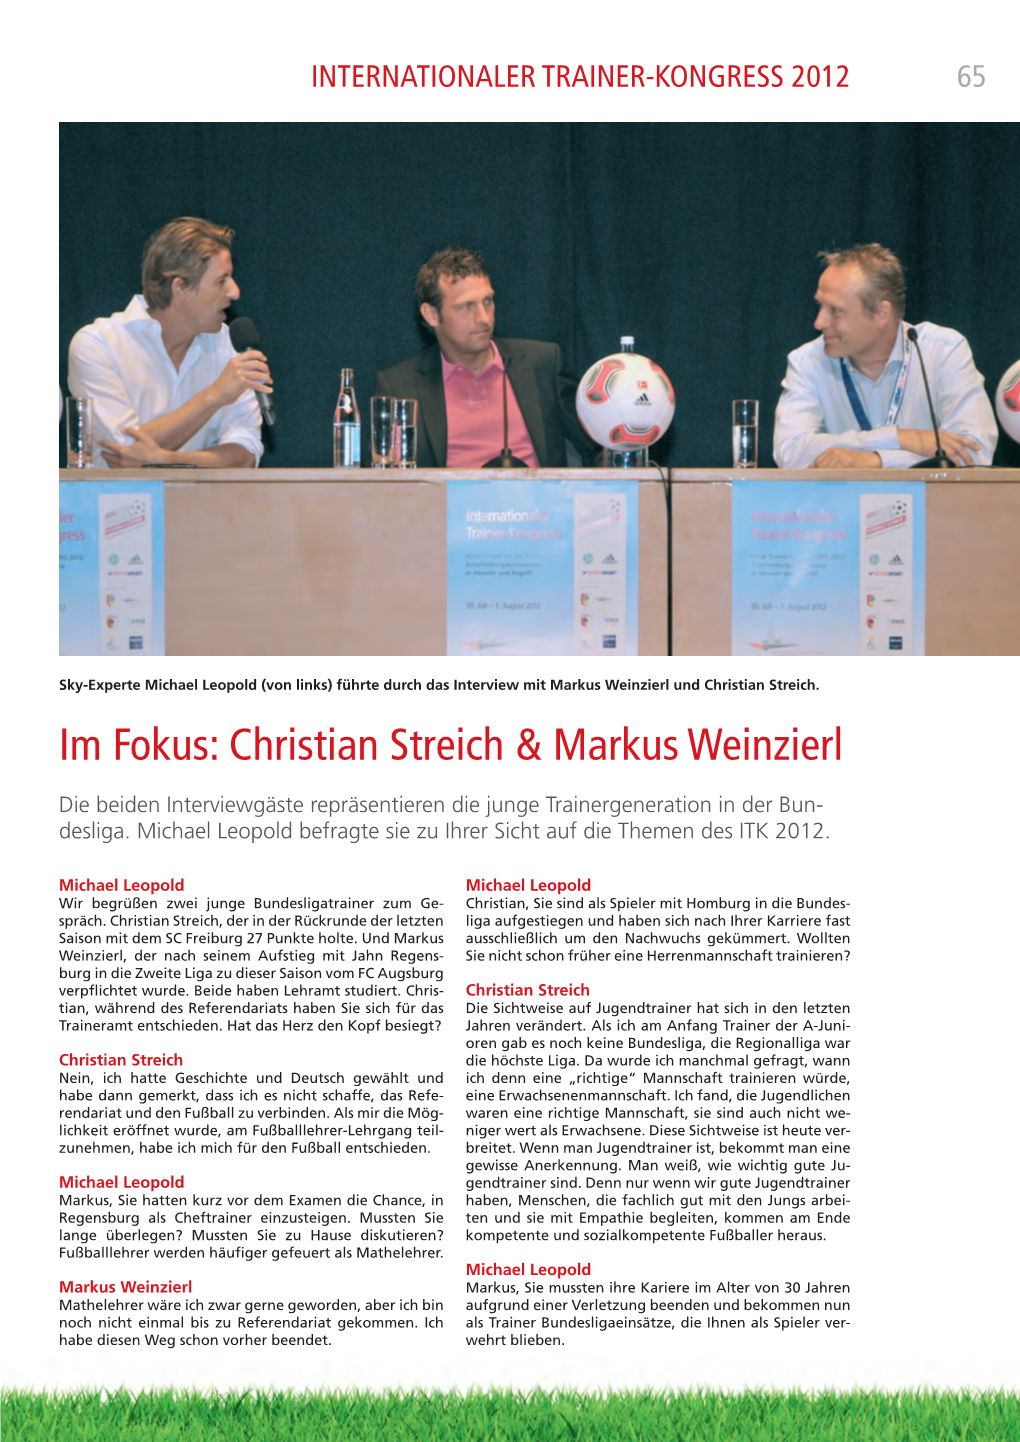 Christian Streich & Markus Weinzierl